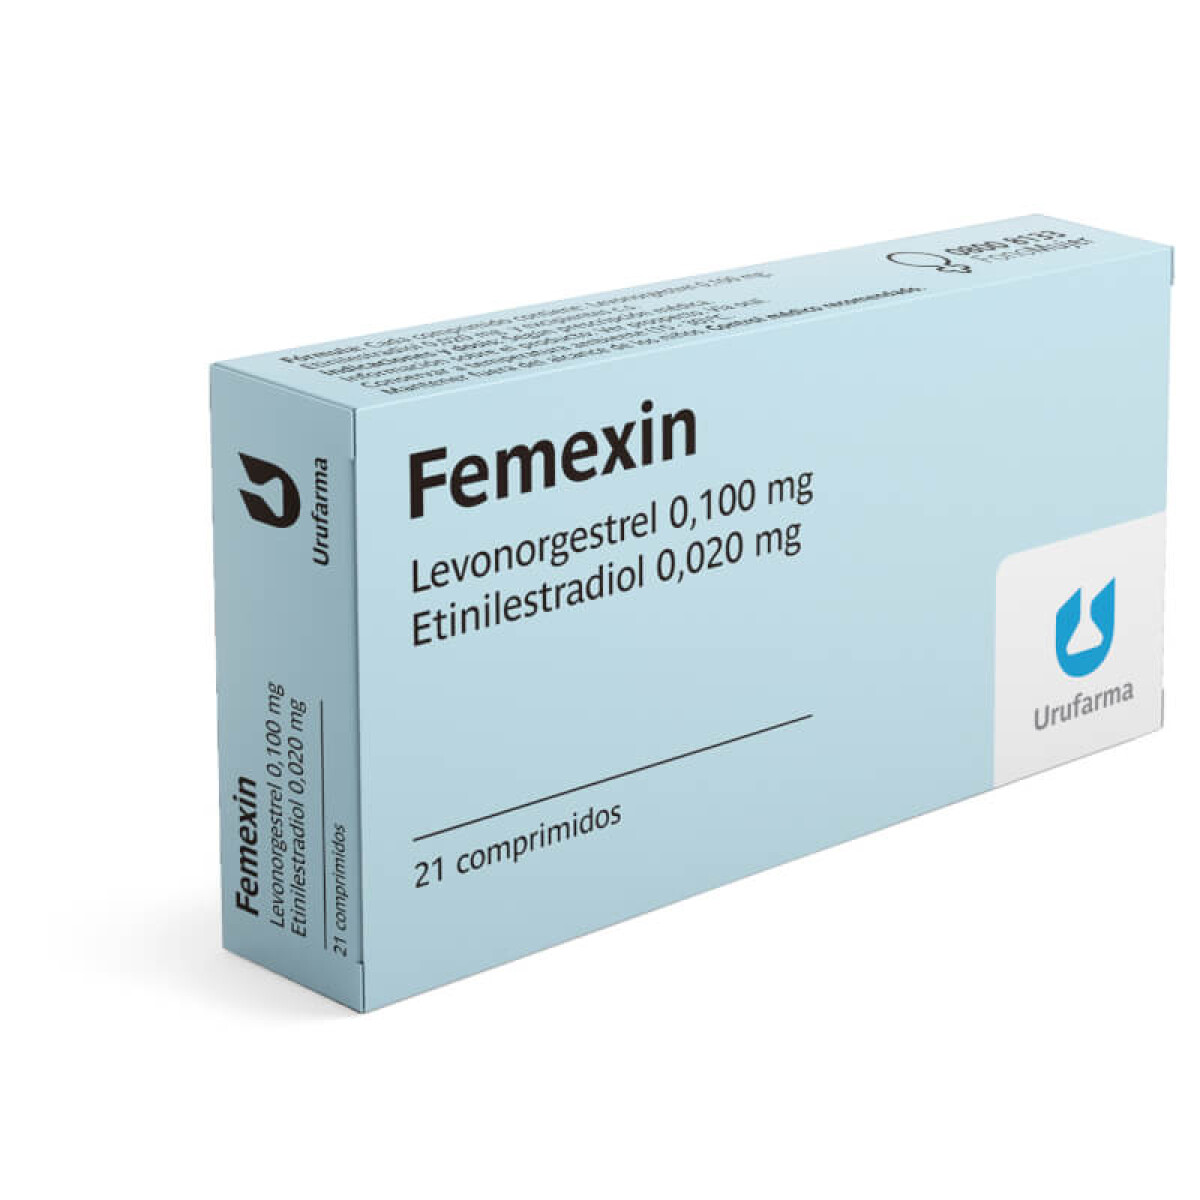 Anticonceptivas Femexin - 21 comprimidos 